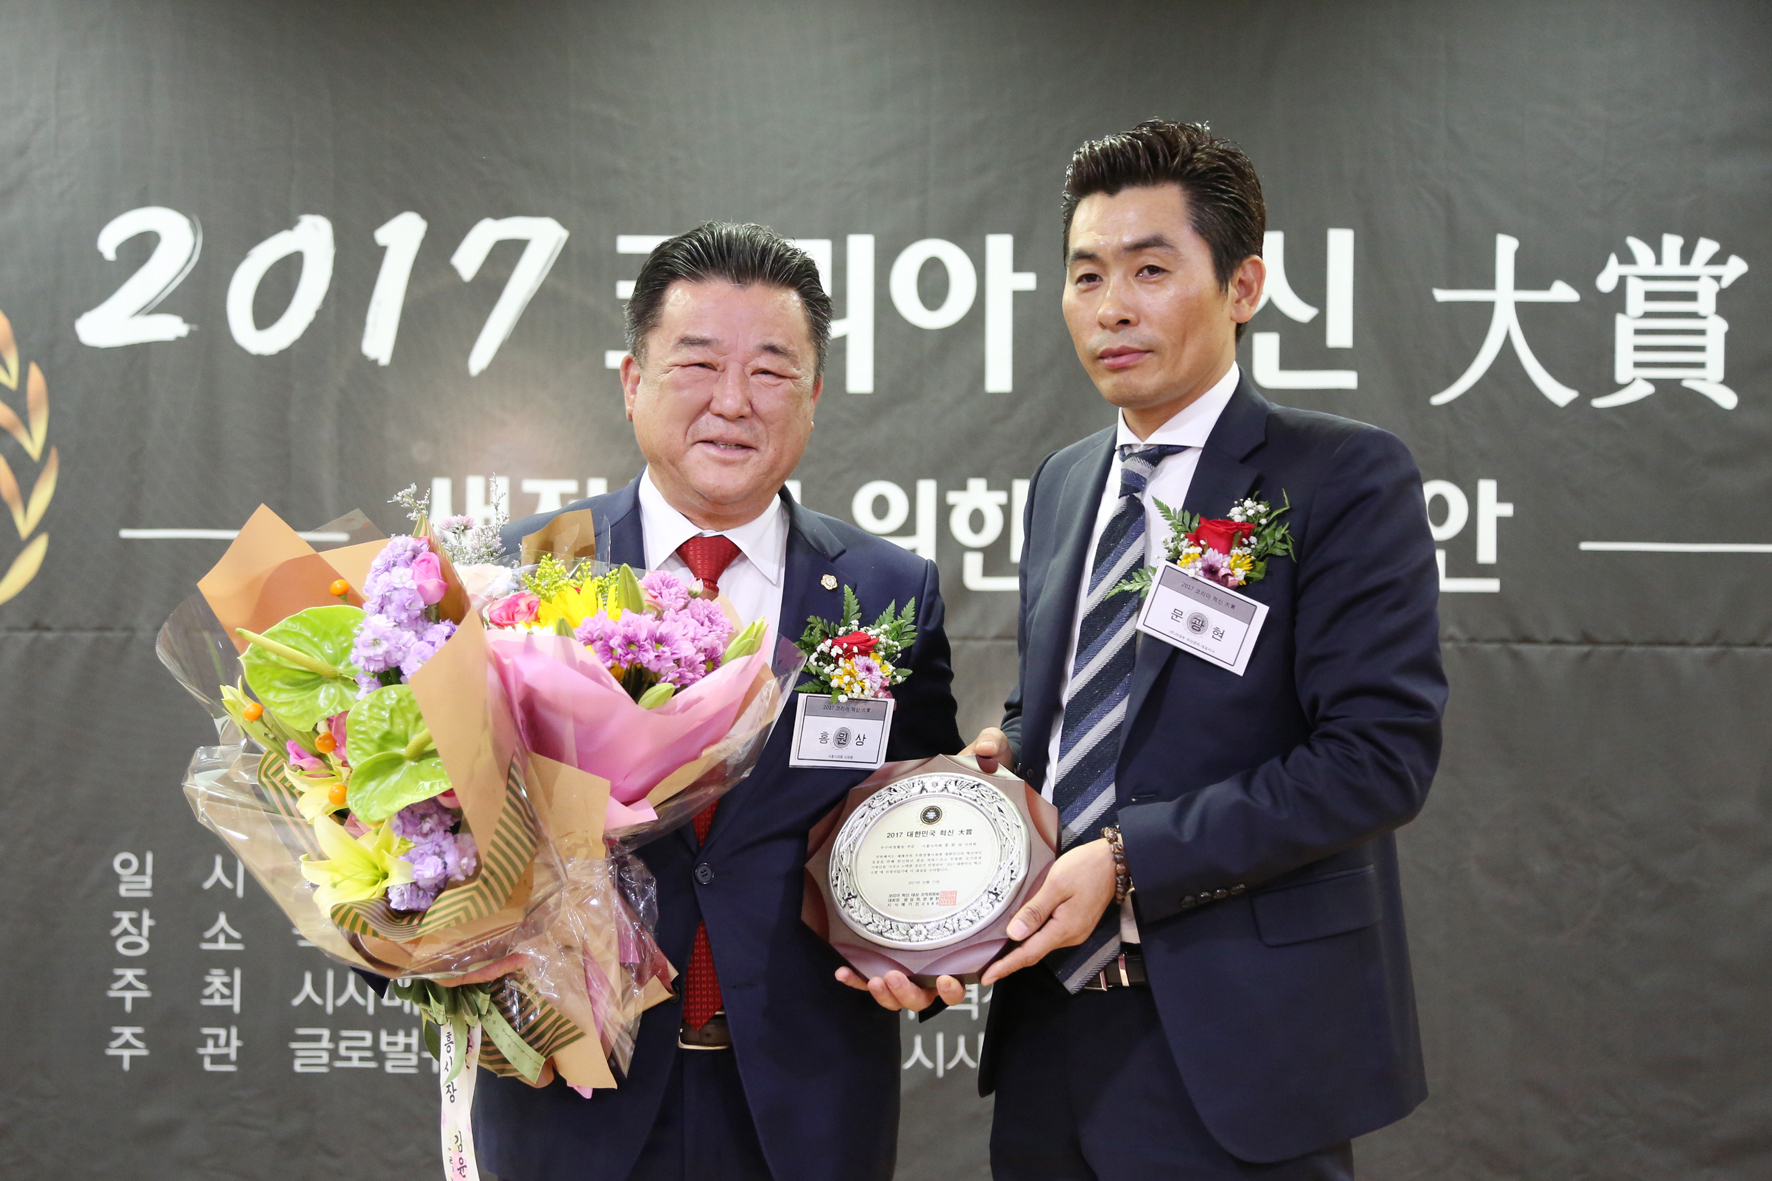 시흥시의회 홍원상 의원, ‘2017 코리아 혁신 대상’ 수상